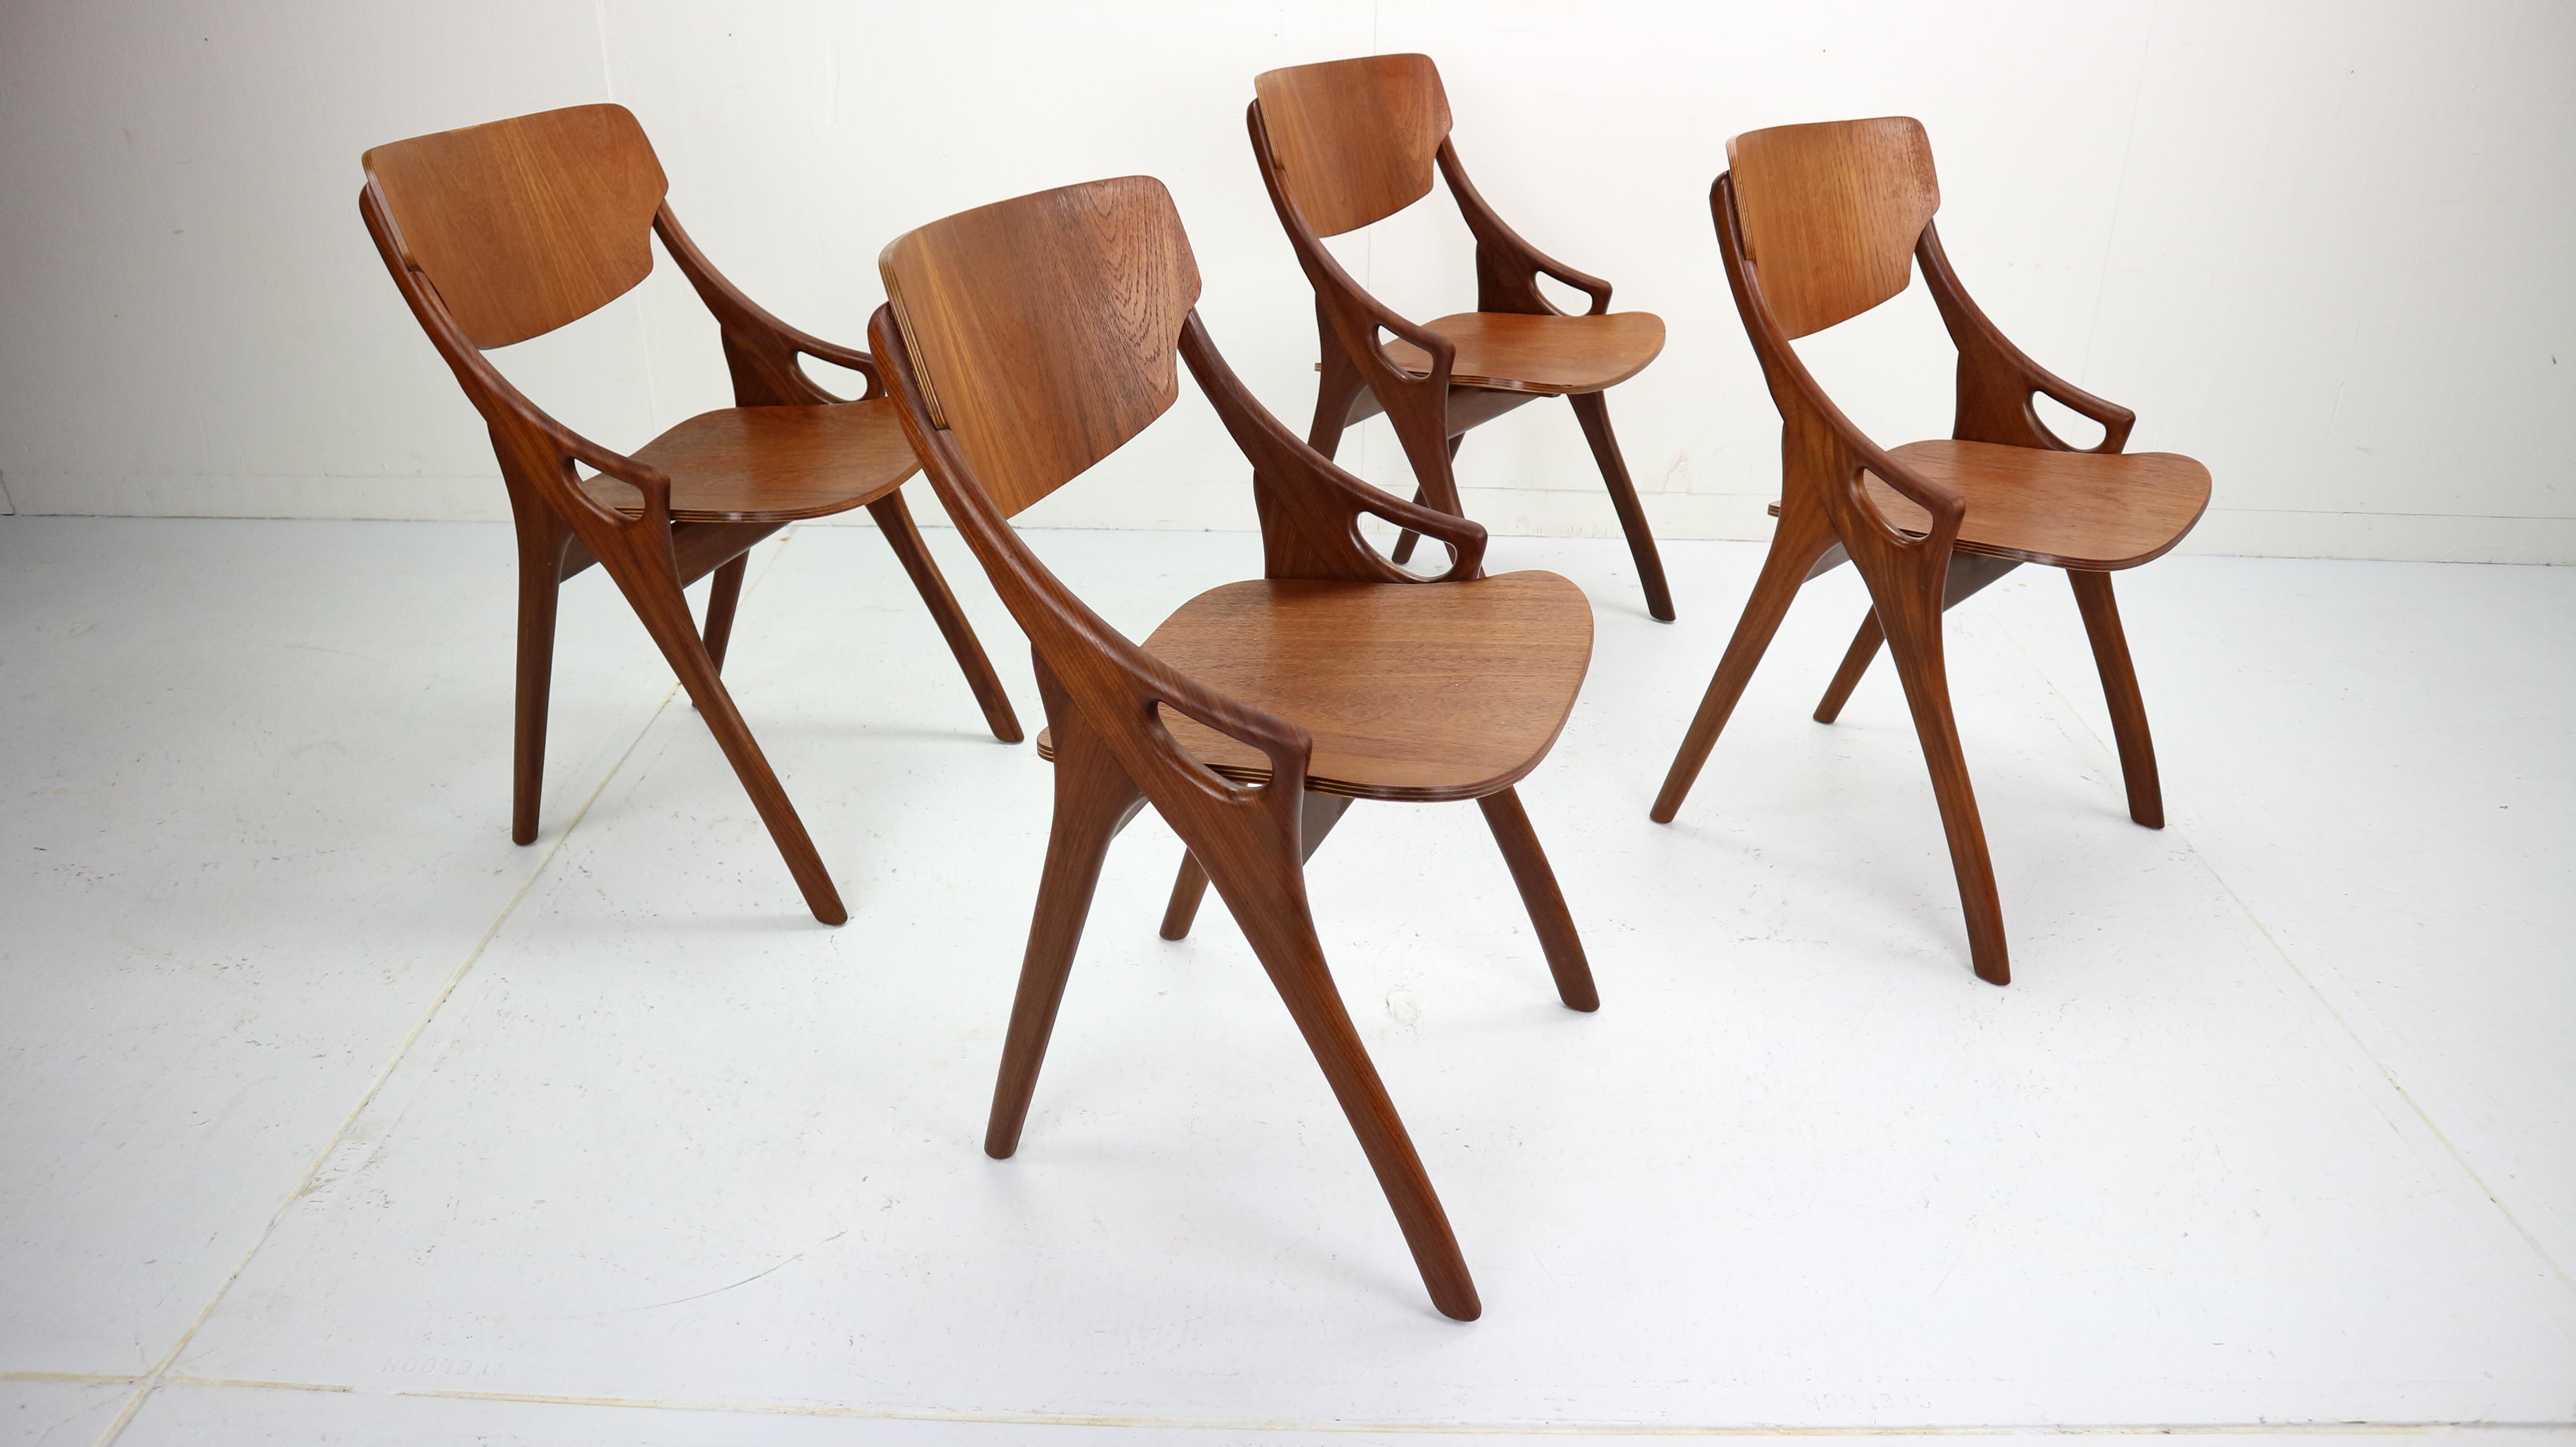 Arne Hovmand-Olsen for Mogens Kold Møbelfabrik, set of four dining chairs. Model 71, teak wood, Denmark, 1959.

This sculptural set of four dining chairs is designed by the Dane Arne Hovmand-Olsen for Mogens Kold Møbelfabrik. 
The chairs are